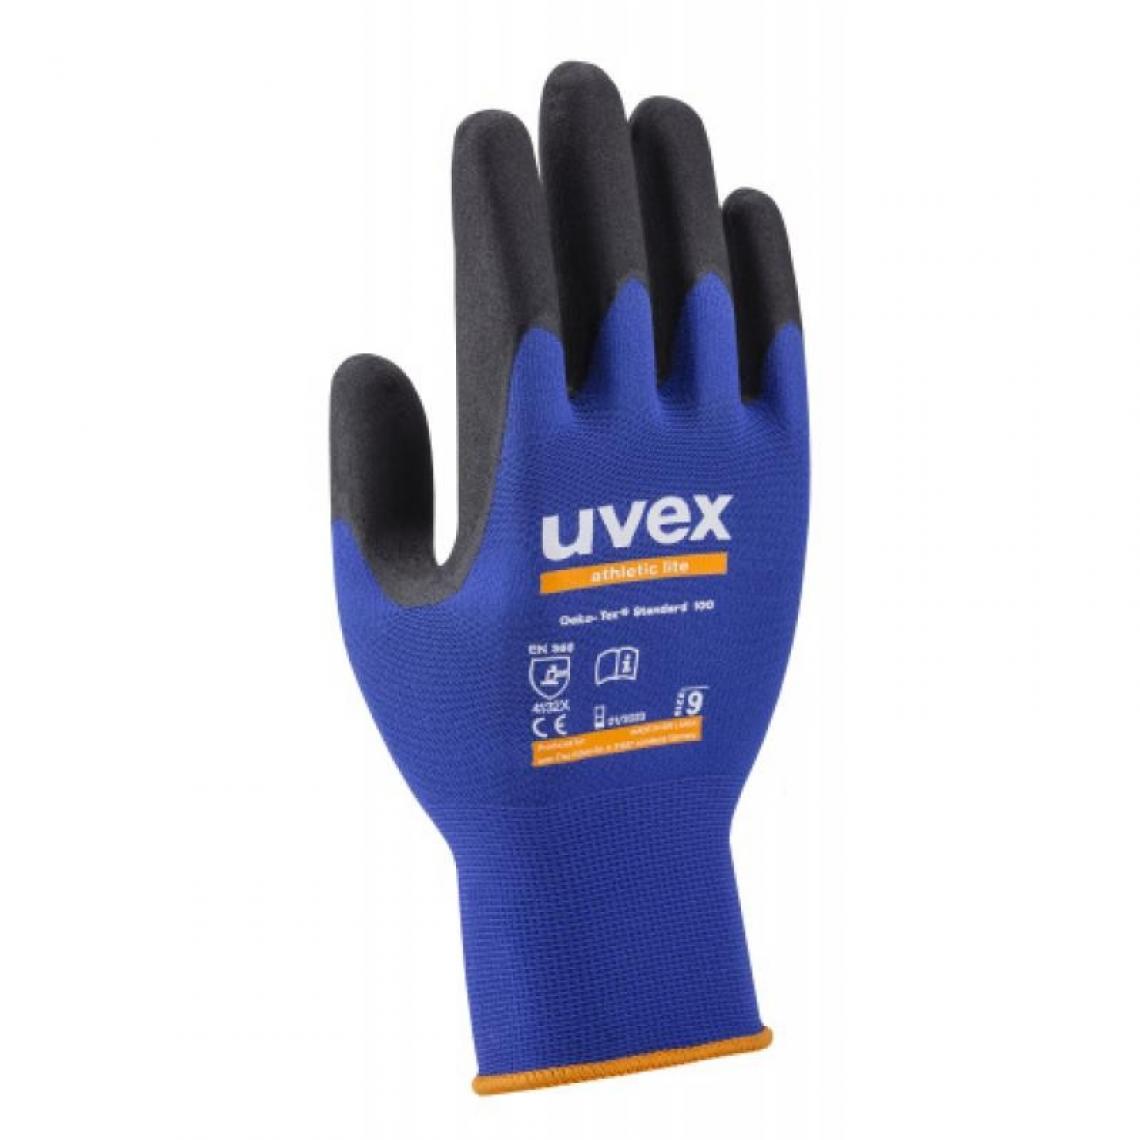 Uvex - Gants athletic lite taille 10 sachet de 10 paires - Protections pieds et mains